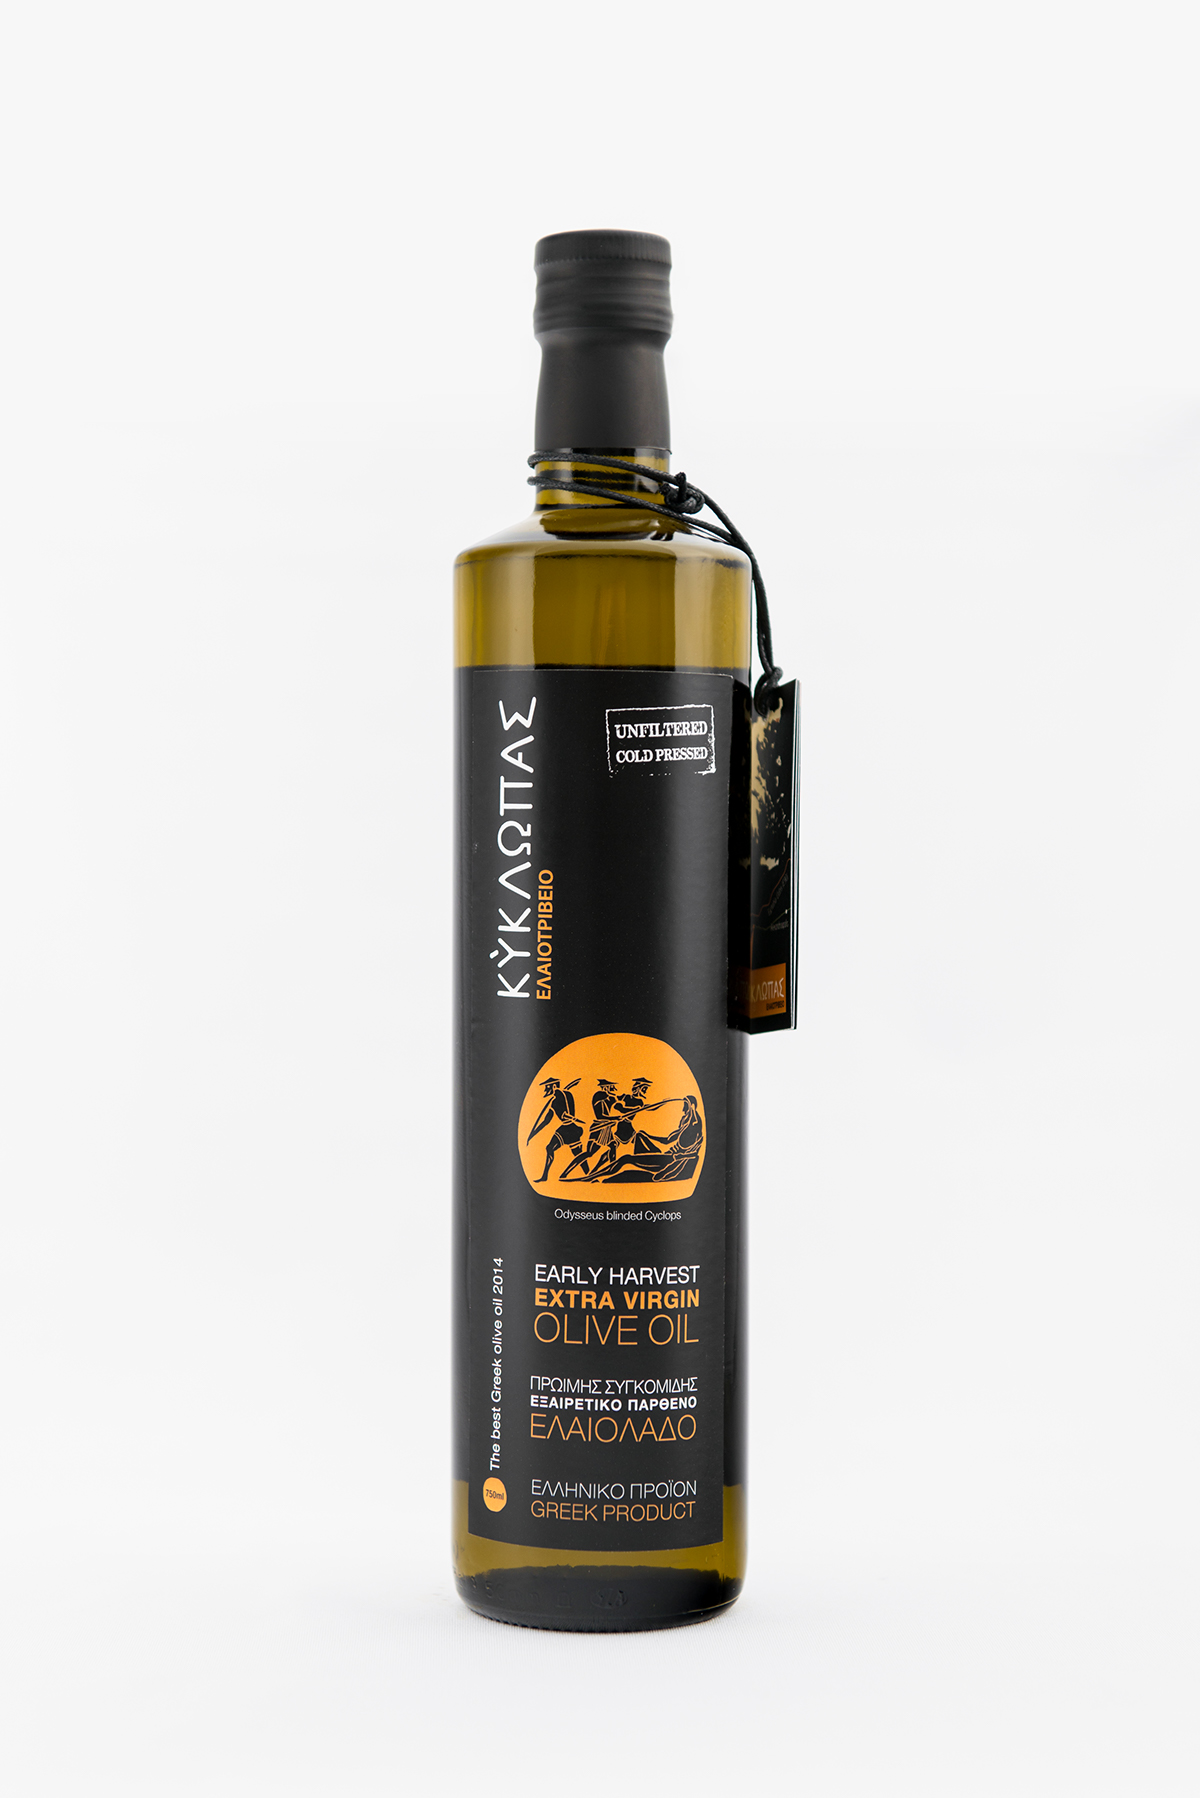 oil olive greek cyclops olive mills Label mythology virgin Packaging Ancient